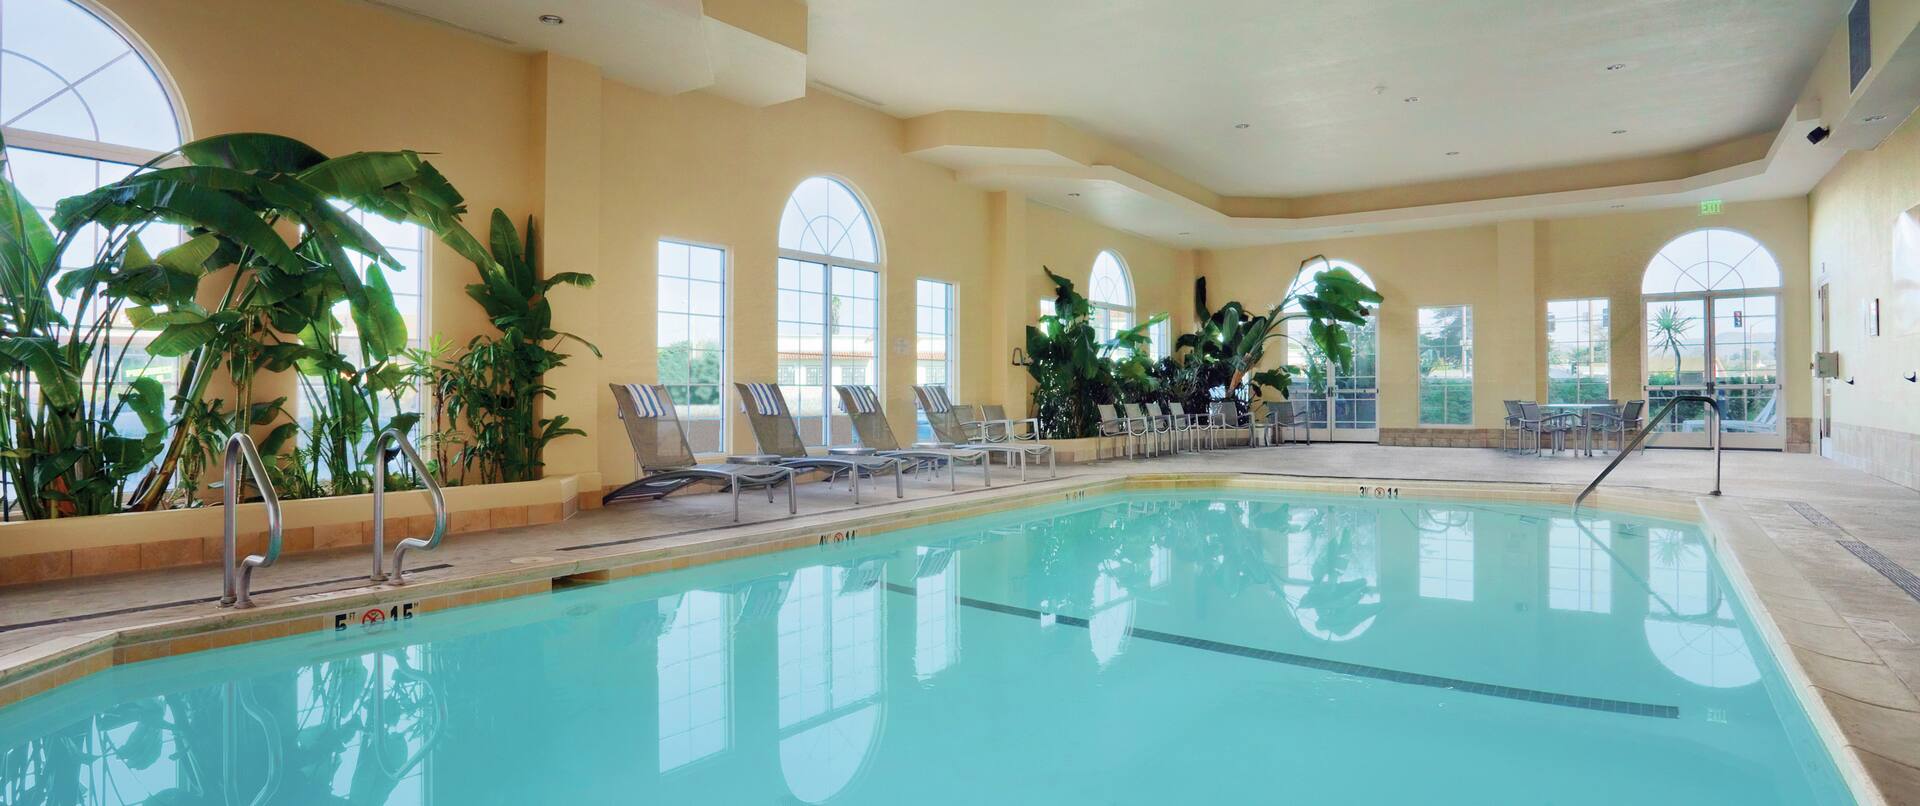 Indoor Swiming Pool